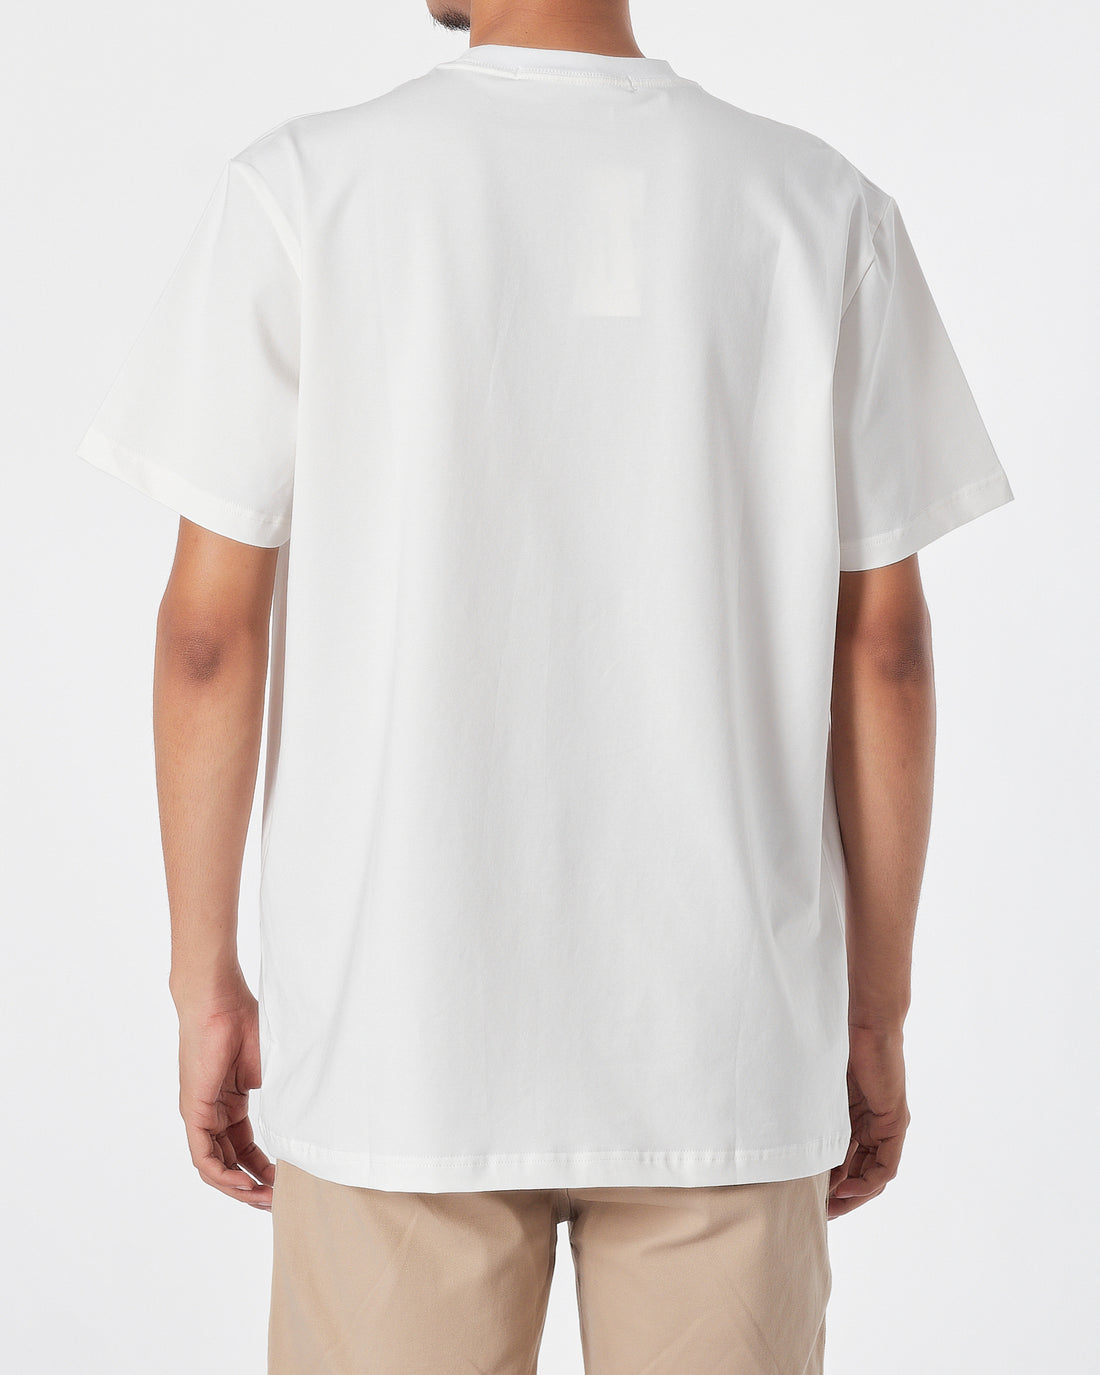 CK Logo Printed Men White  T-Shirt 16.90